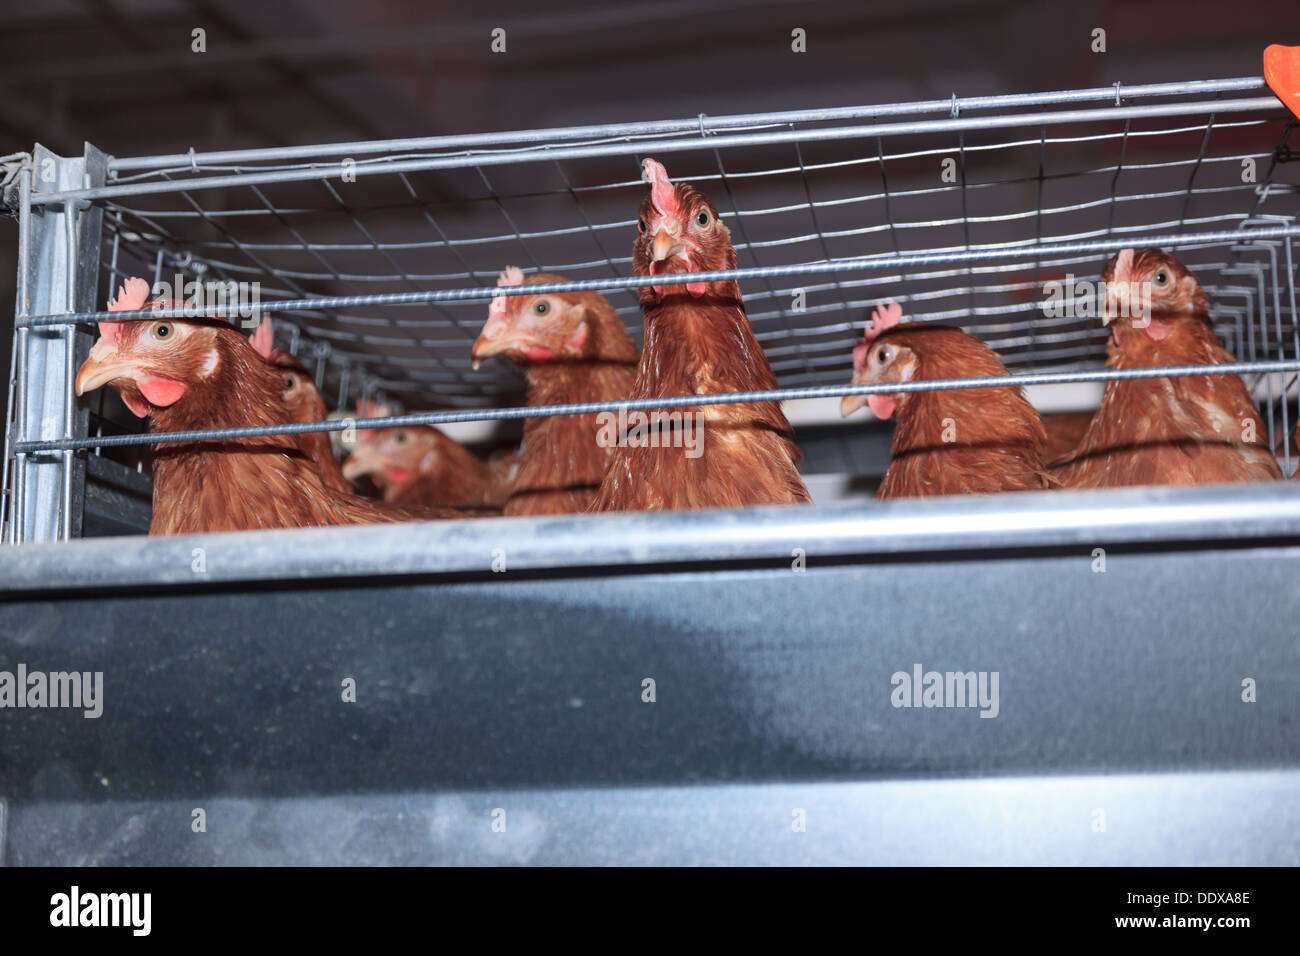 Azienda agricola di pollame. La produzione industriale di uova commestibili. Foto Stock